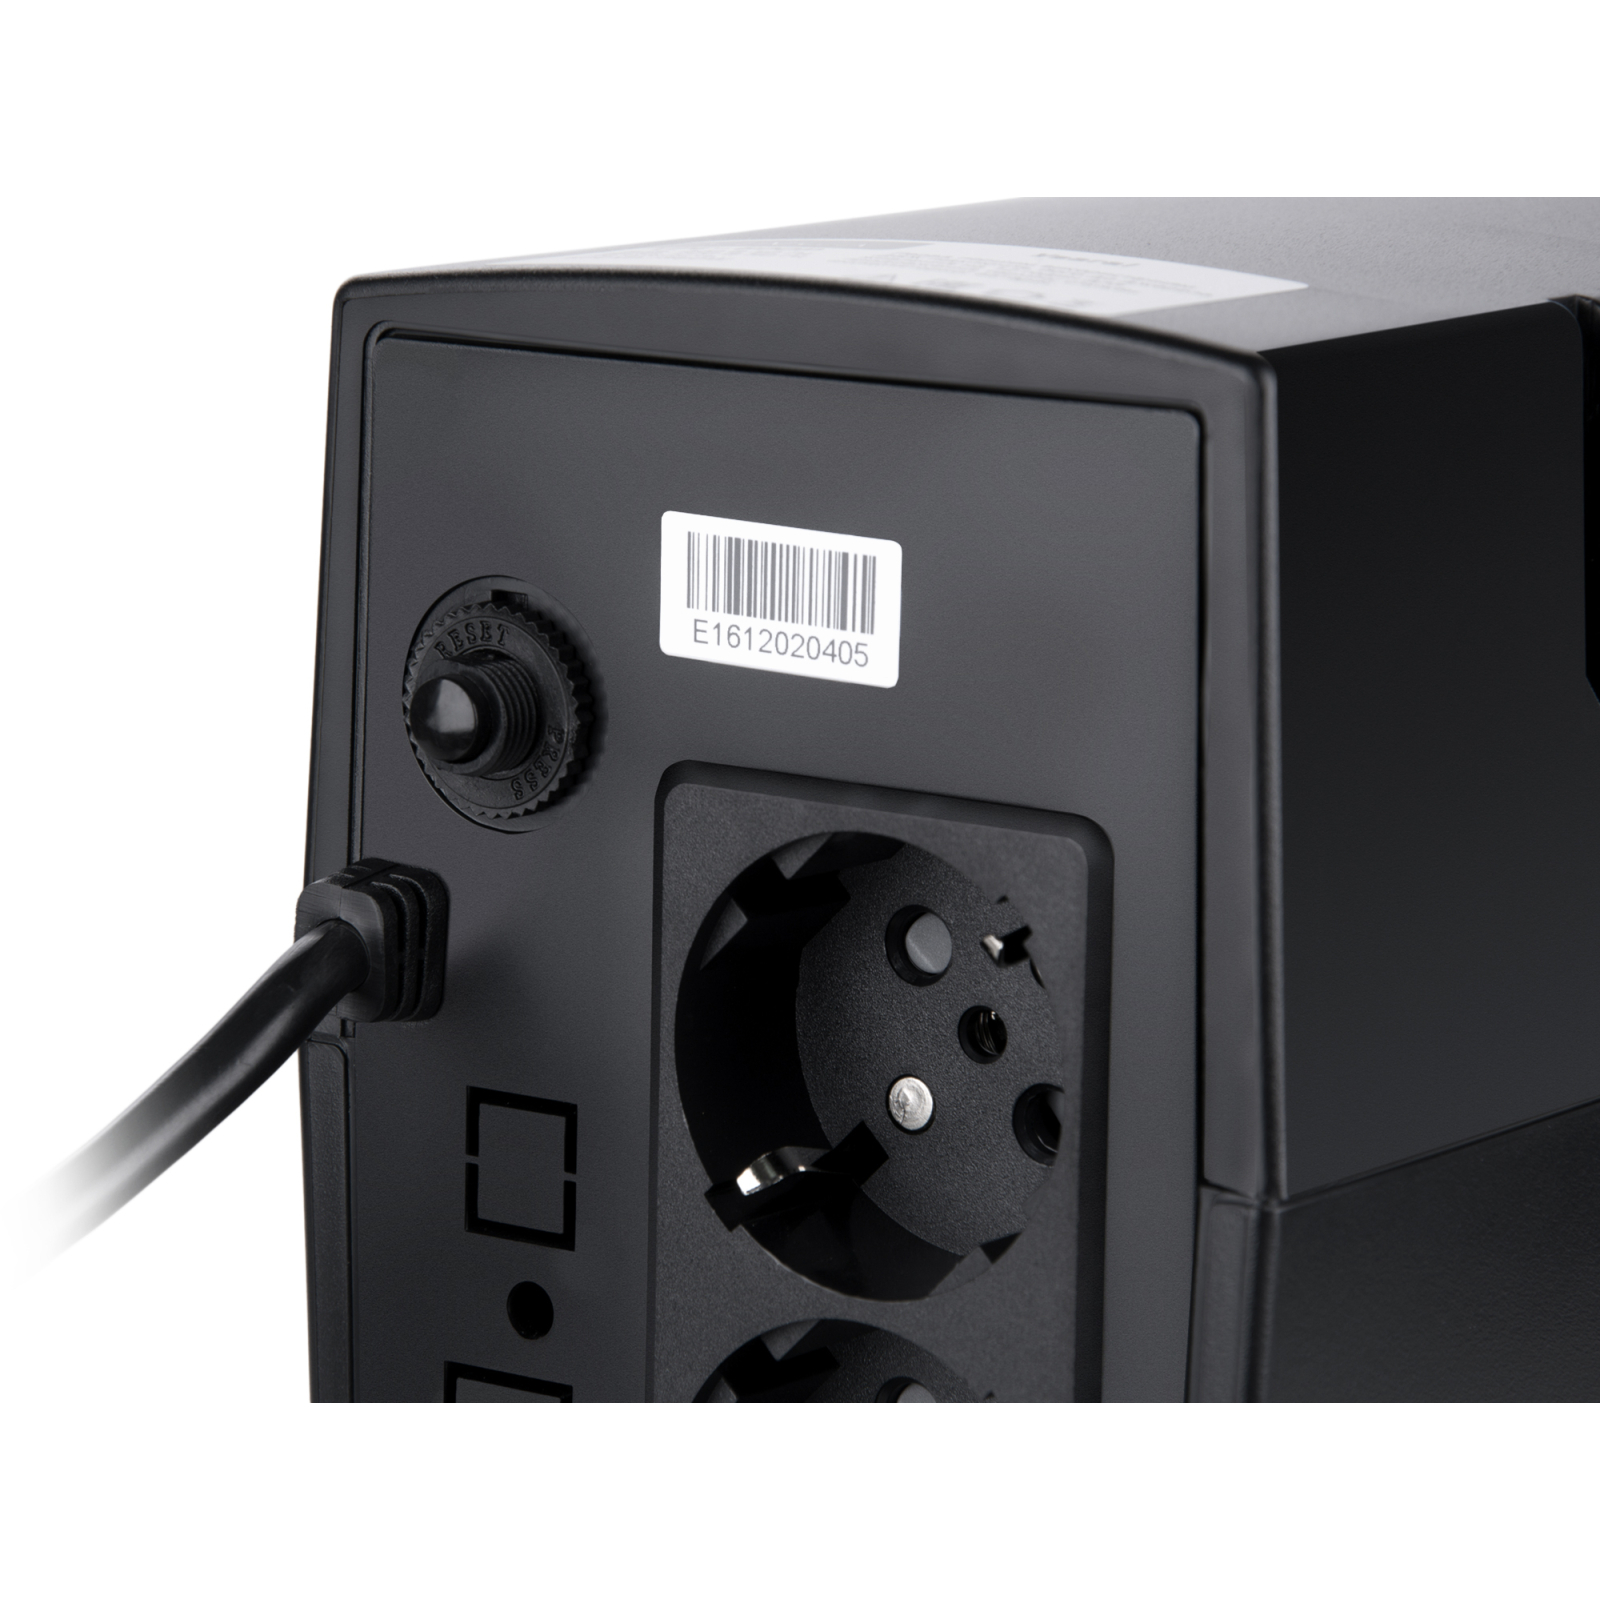 Пристрій безперебійного живлення Vinga LCD 800VA plastic case (VPC-800P) зображення 5